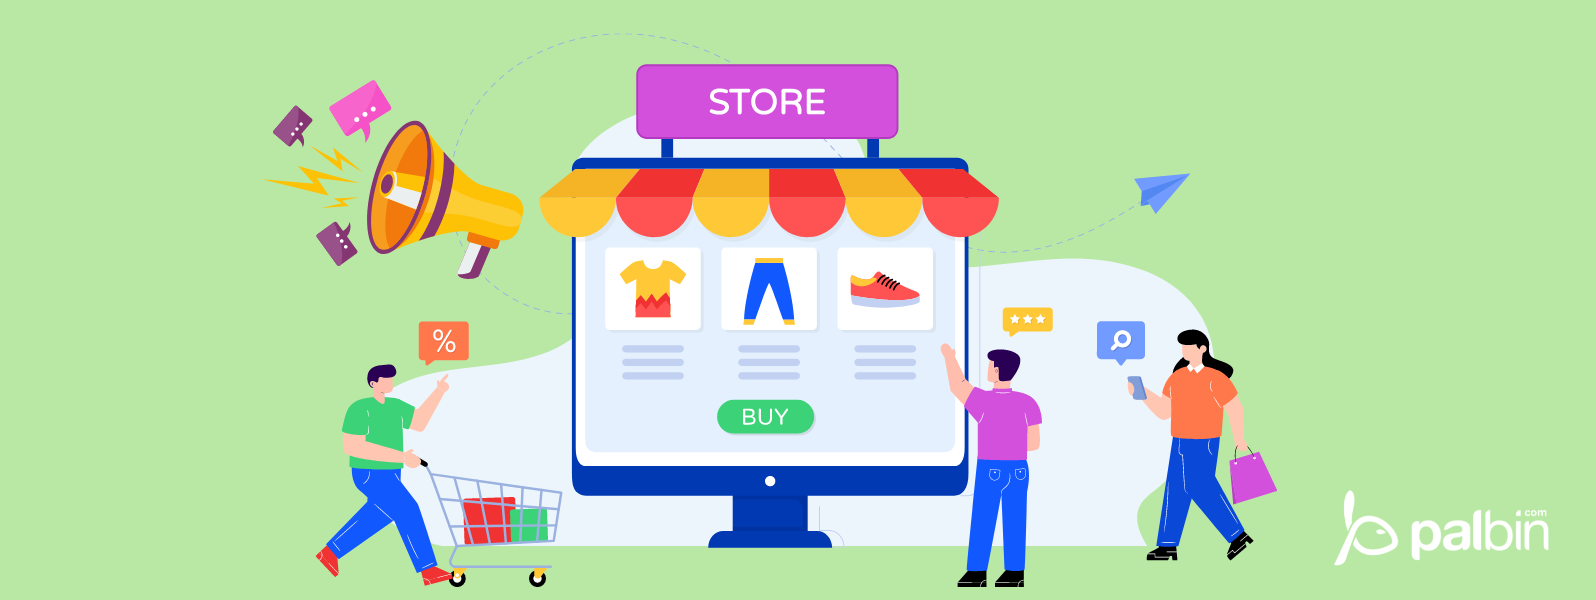 Cómo crear una tienda de ropa online en 10 pasos